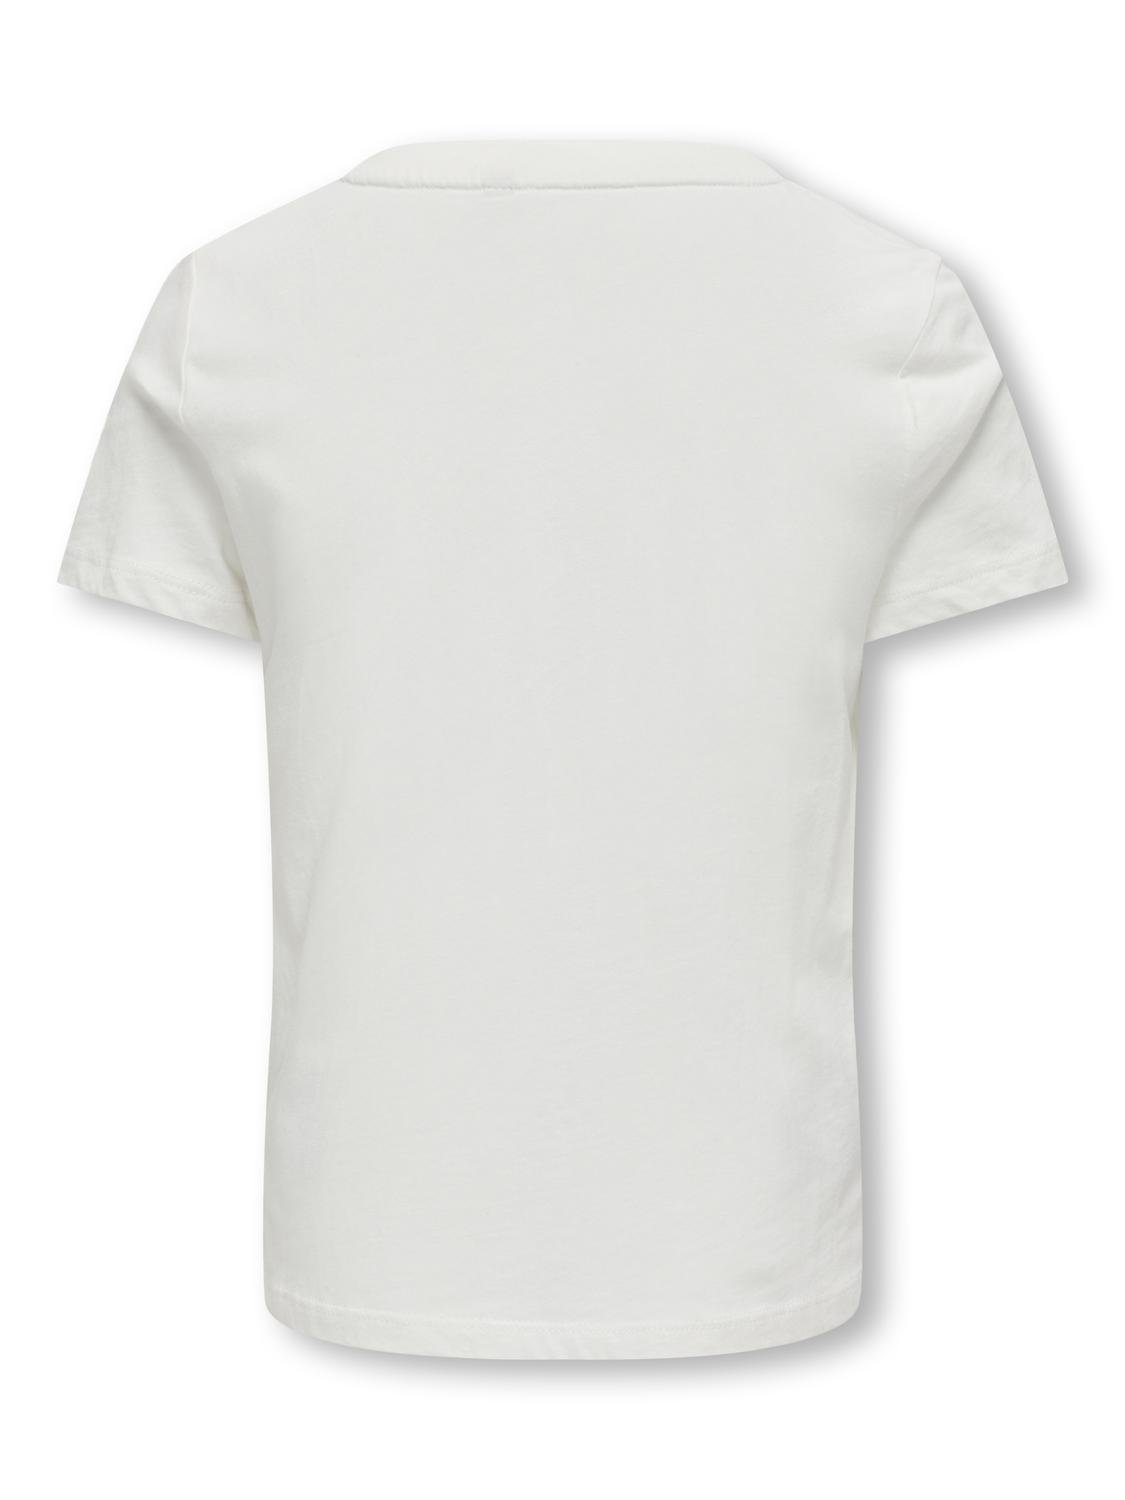 ONLY O-hals t-shirt -Cloud Dancer - 15323354